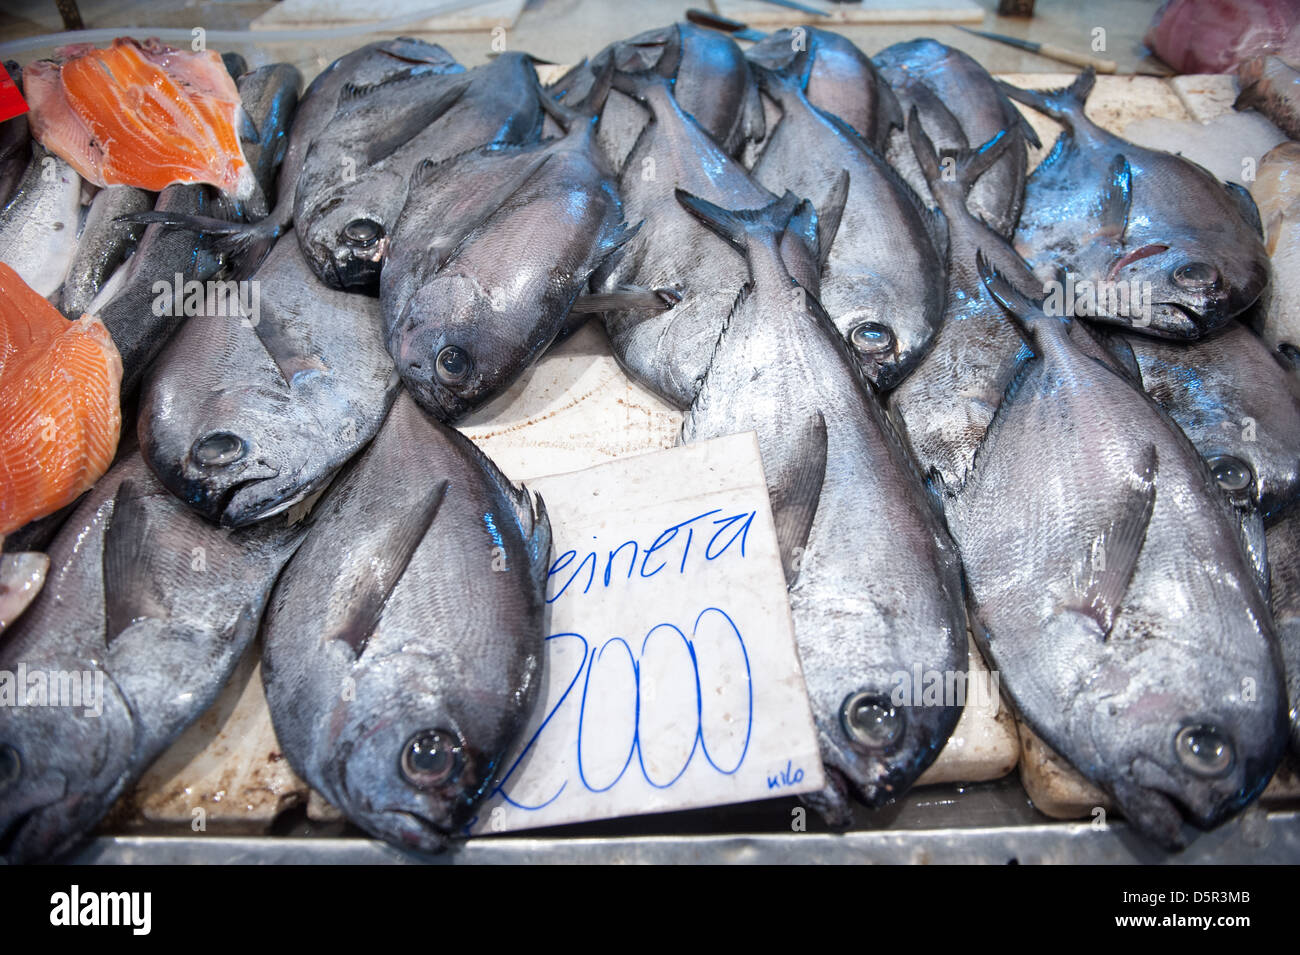 Mercado Central, uno del Cile il più grande pesce fresco mercati Santiago del Cile Foto Stock